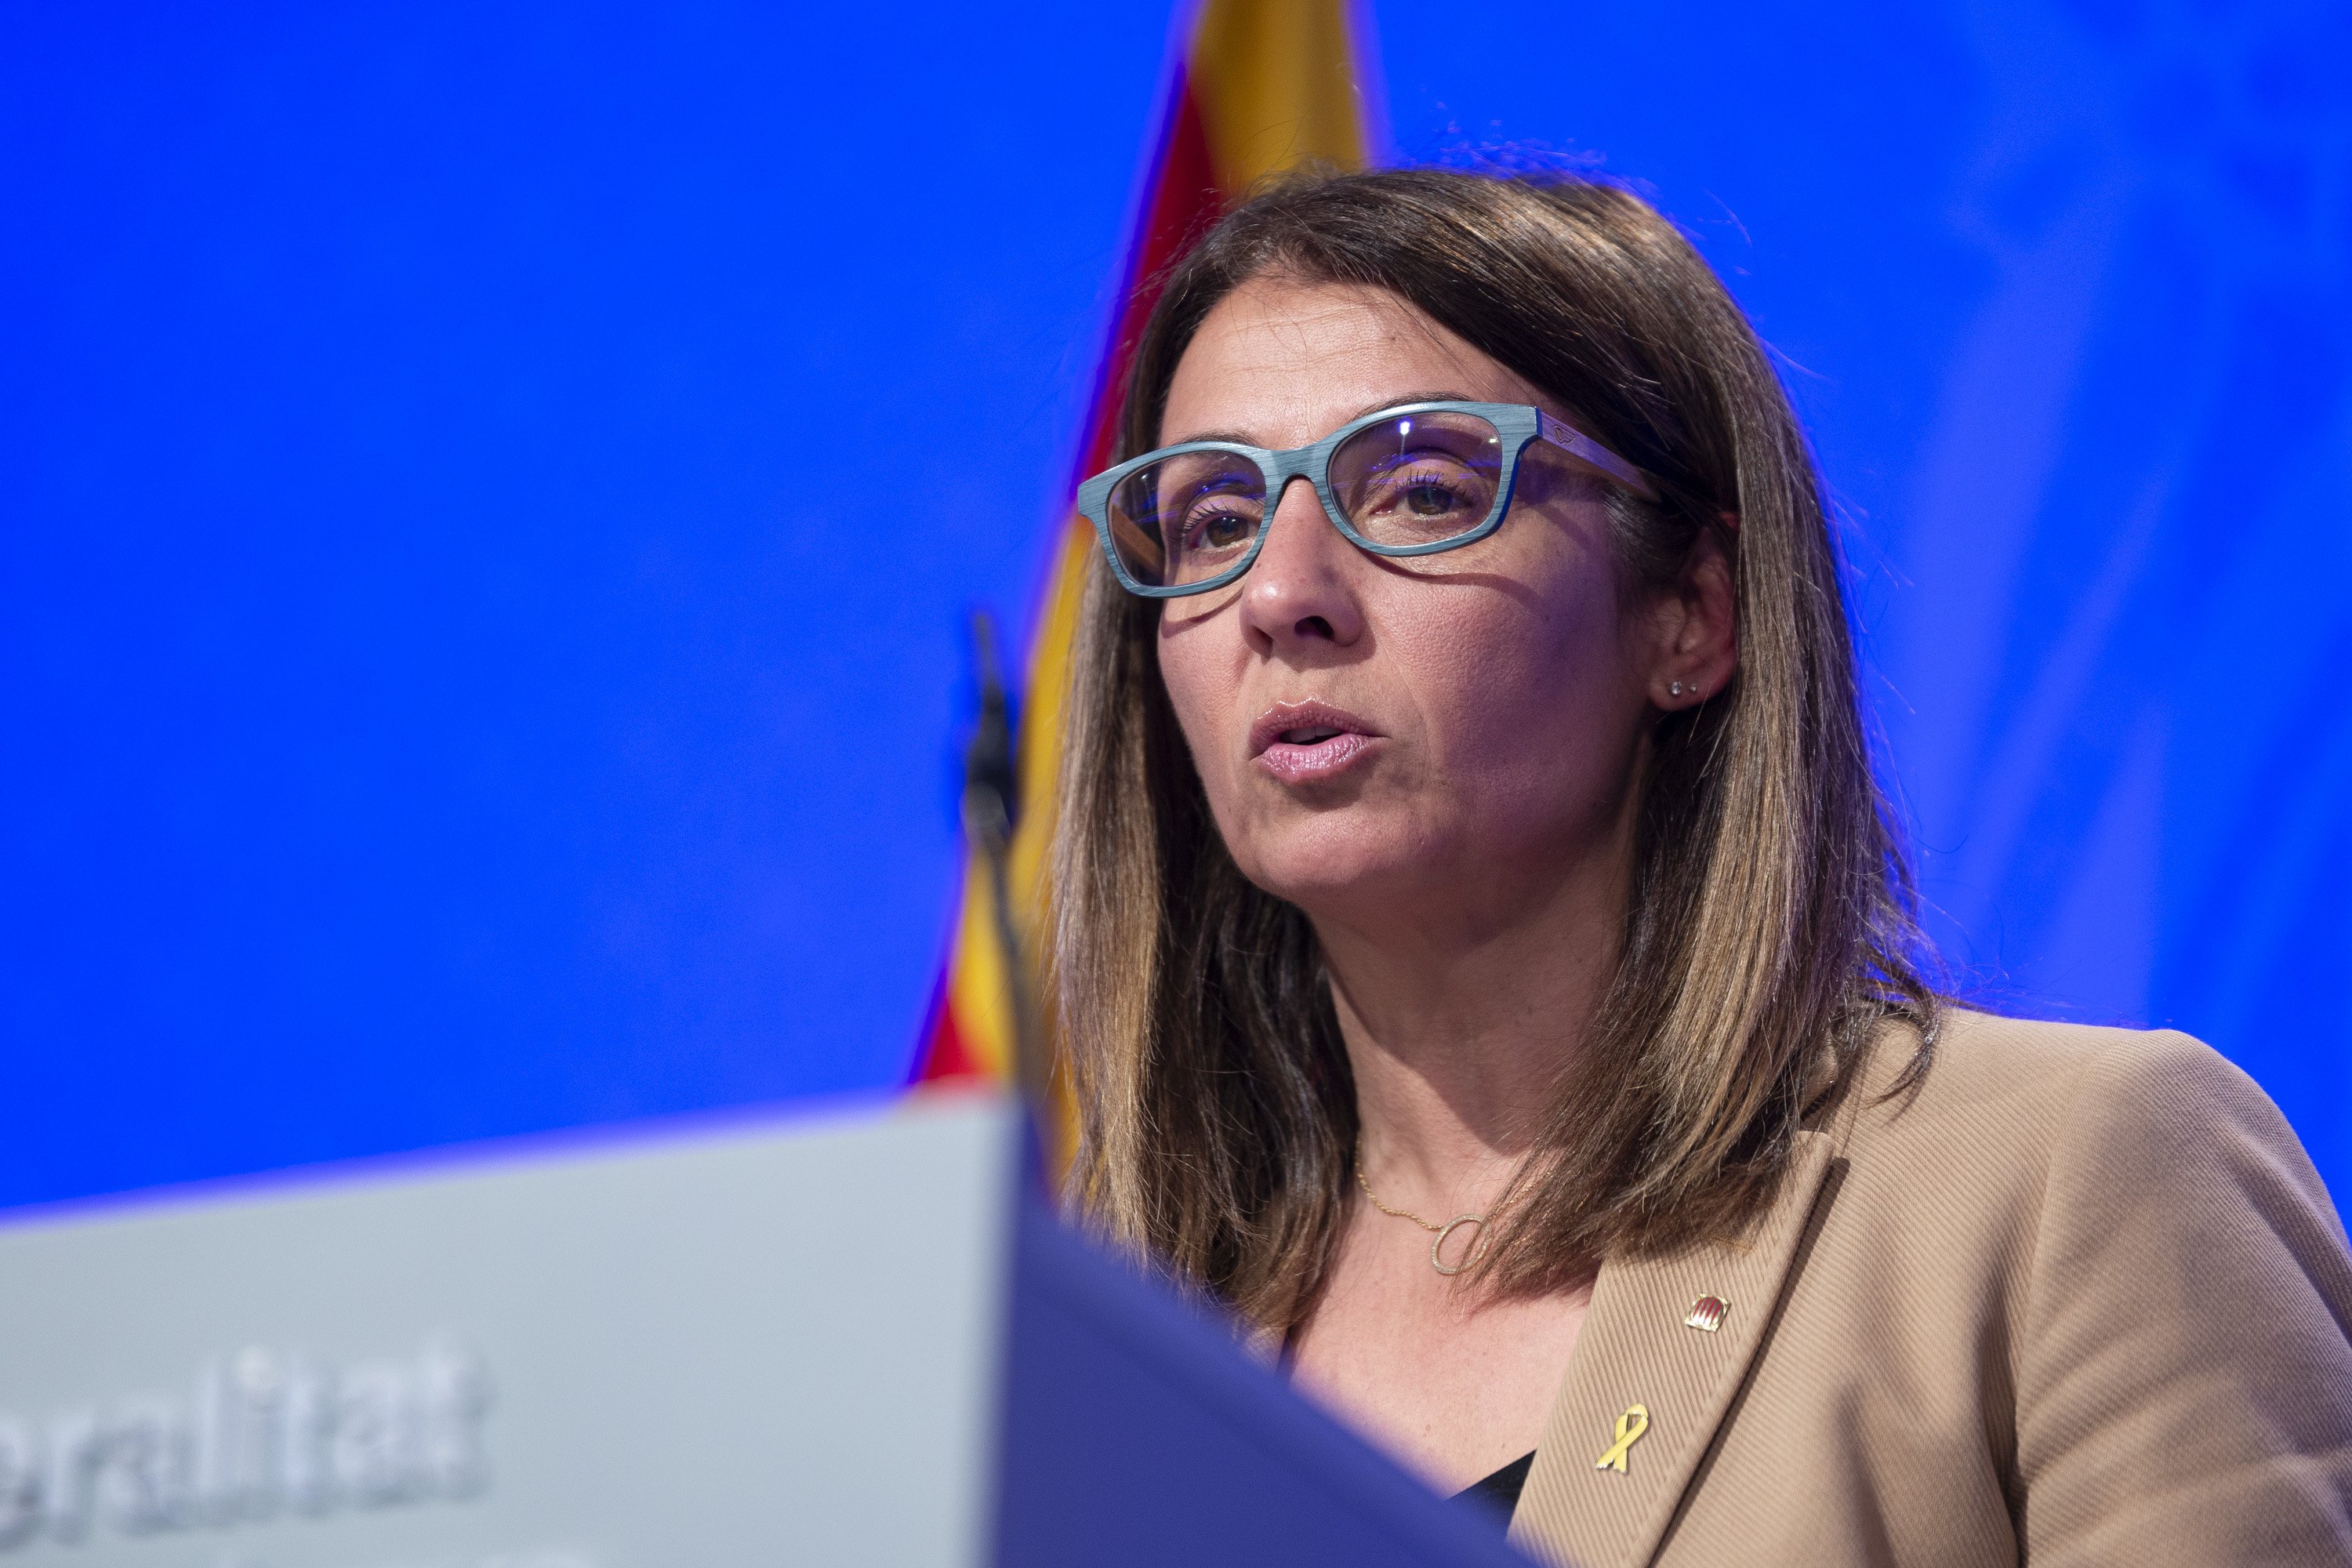 El Govern se muestra preocupado por los gestos de Sánchez y pide "diálogo" sin vetos